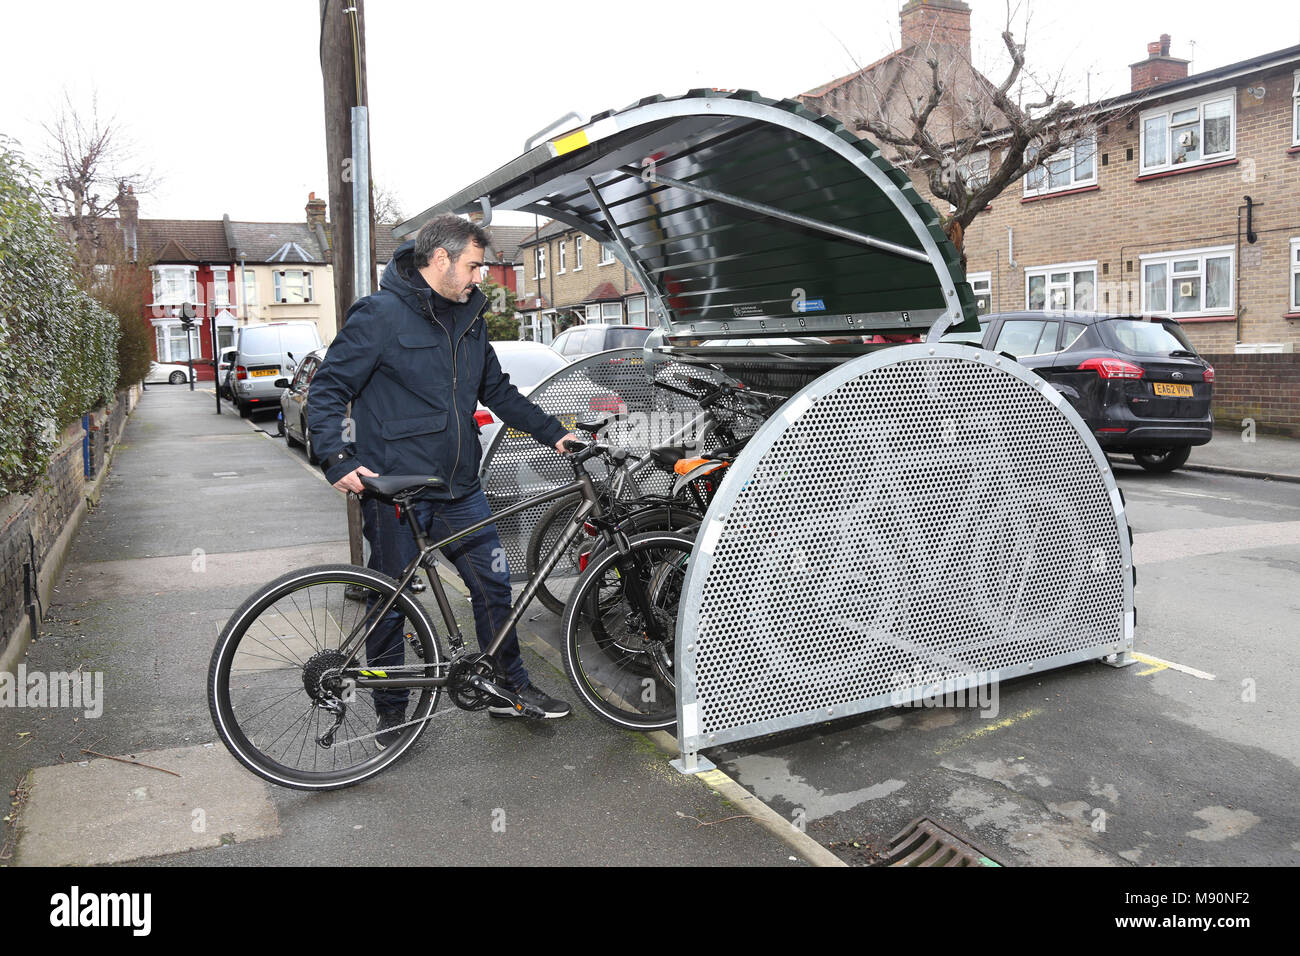 Ein Radfahrer Orte sein Fahrrad in eine sichere auf der Straße Fahrrad geschäft kürzlich auf einer ruhigen Londoner Straße installiert. Stockfoto